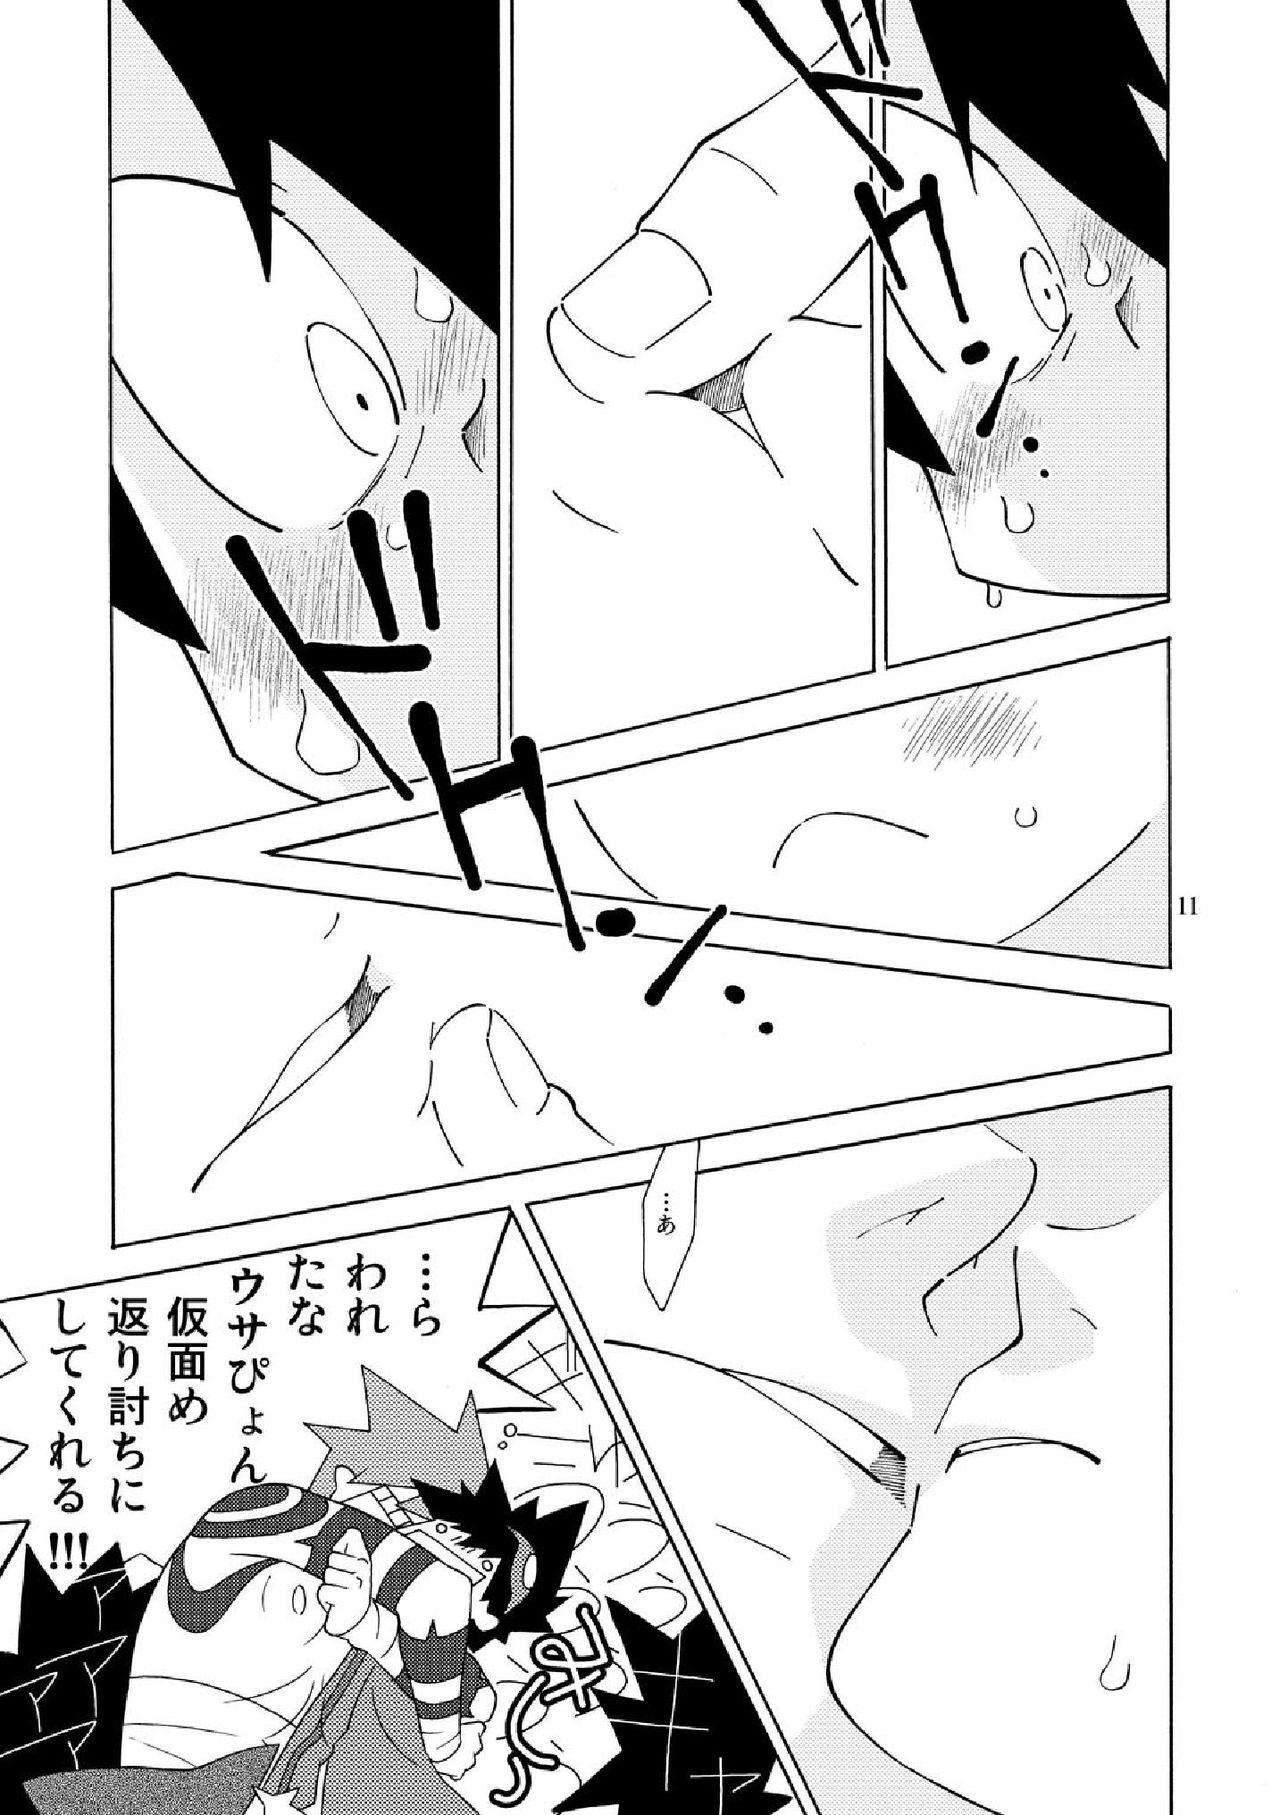 [musuBi (Shiomusubi)] Sweet morning (Tengen Toppa Gurren Lagann) page 11 full